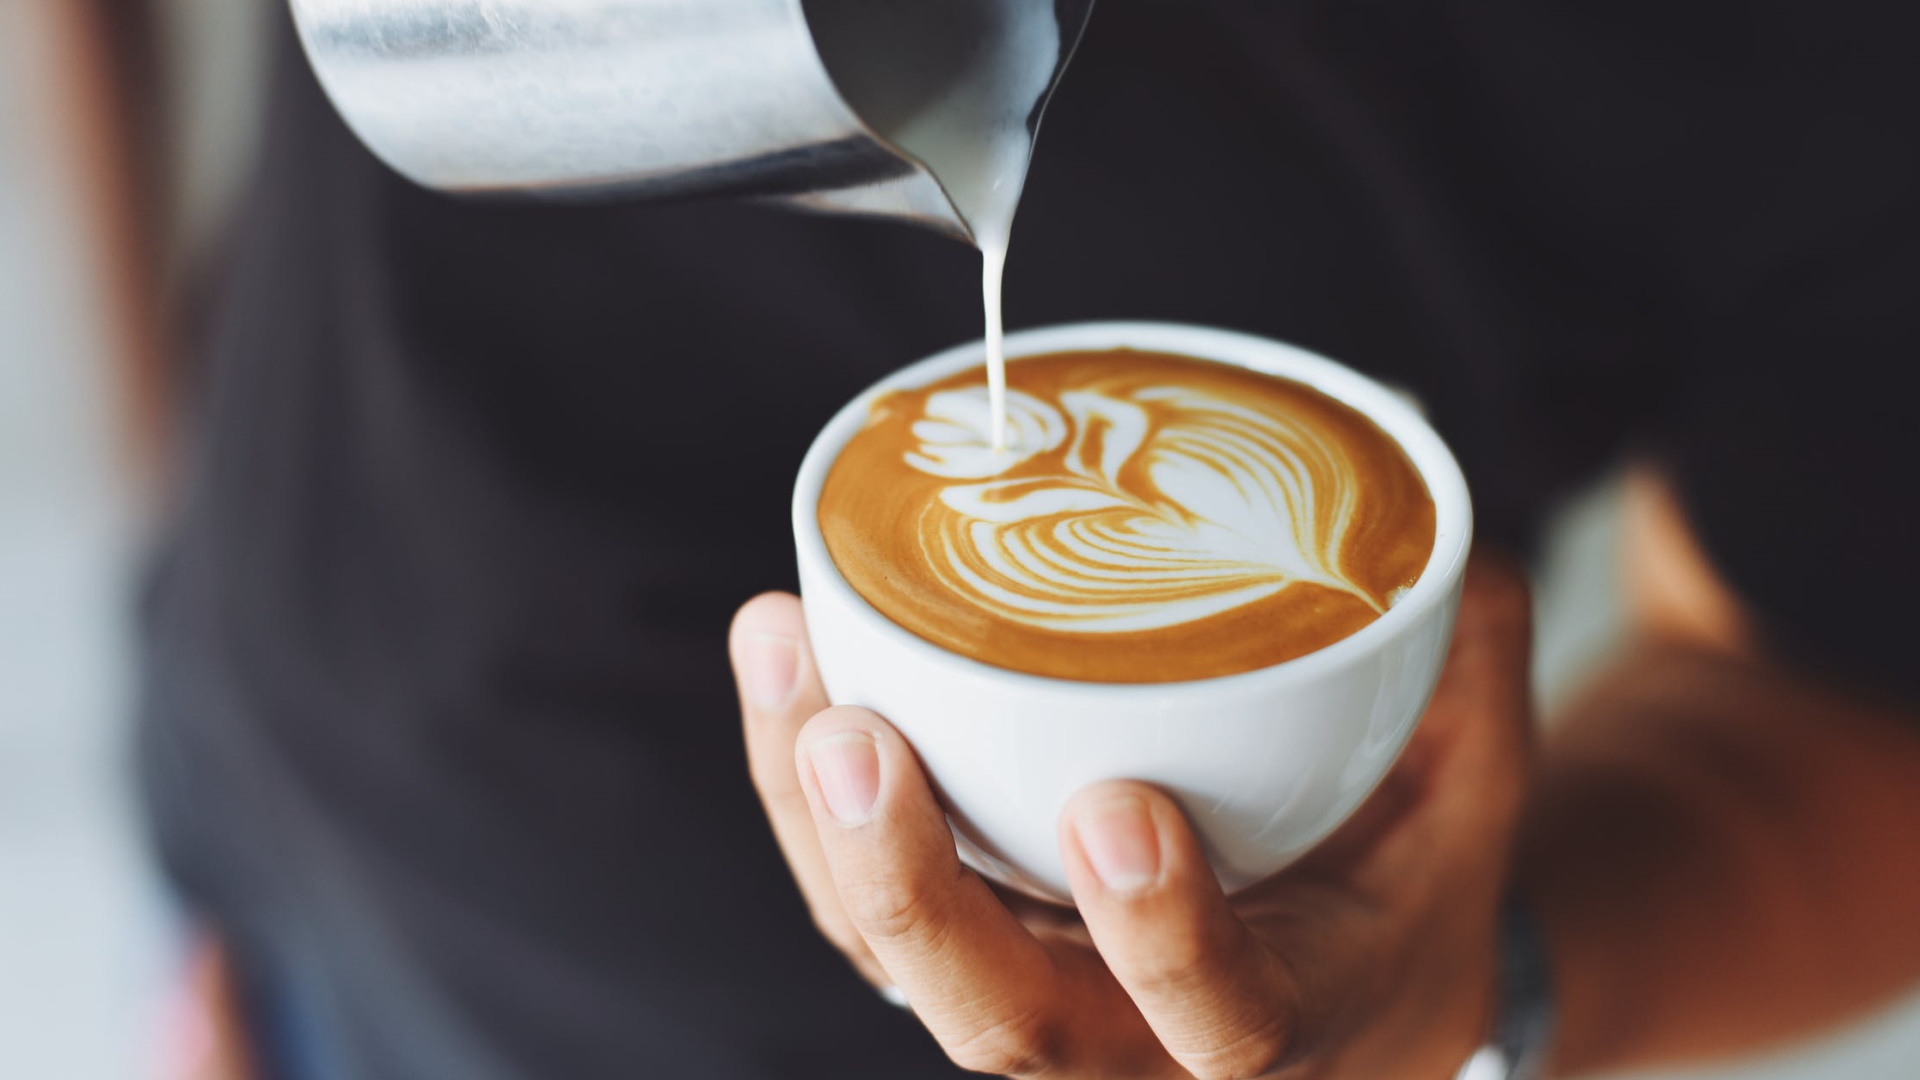 A person pours milk into a cafe